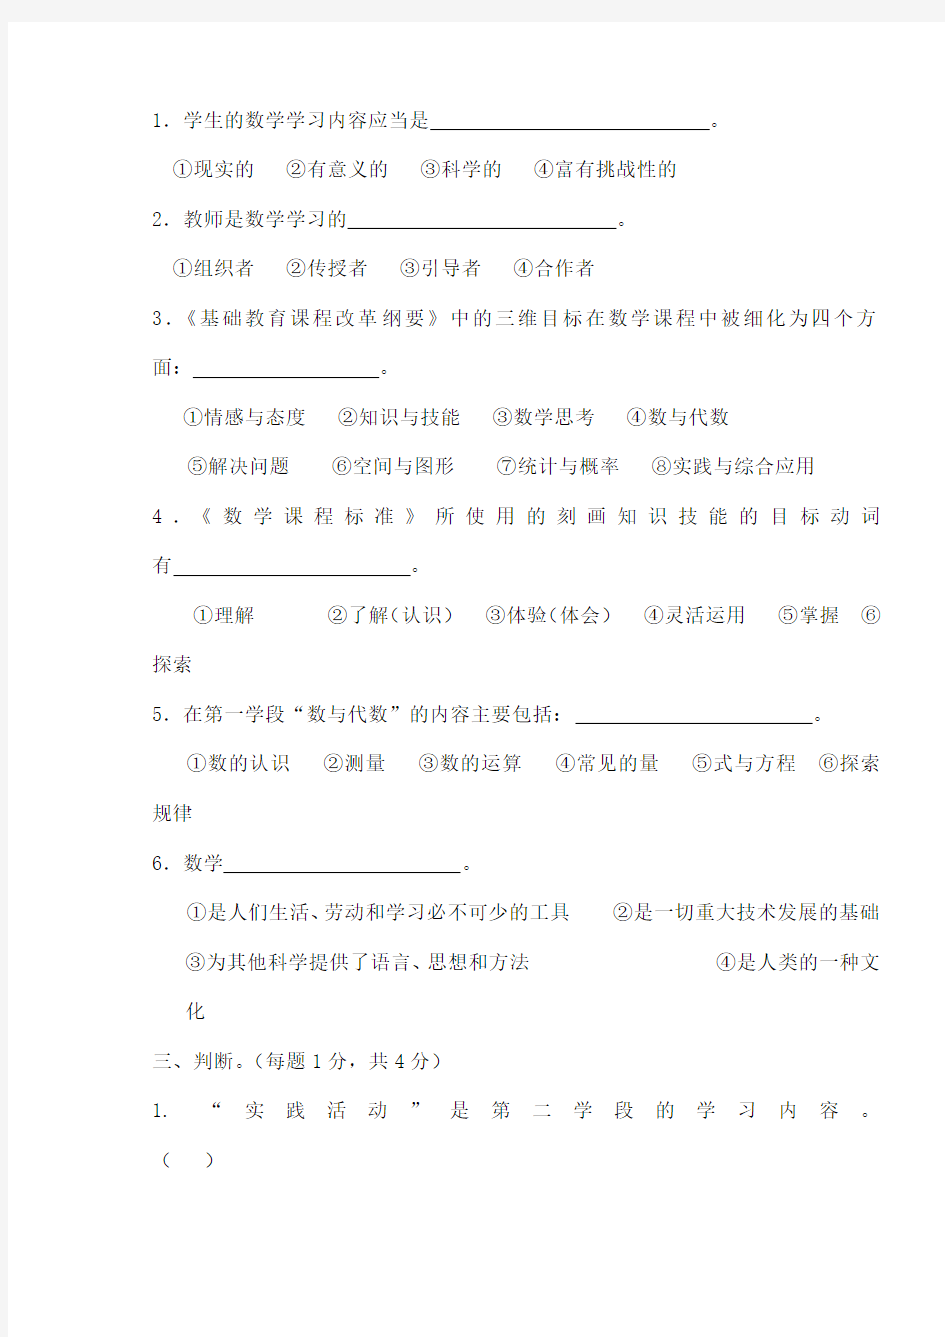 徐州市小学数学教师基本功大赛测试题及答案